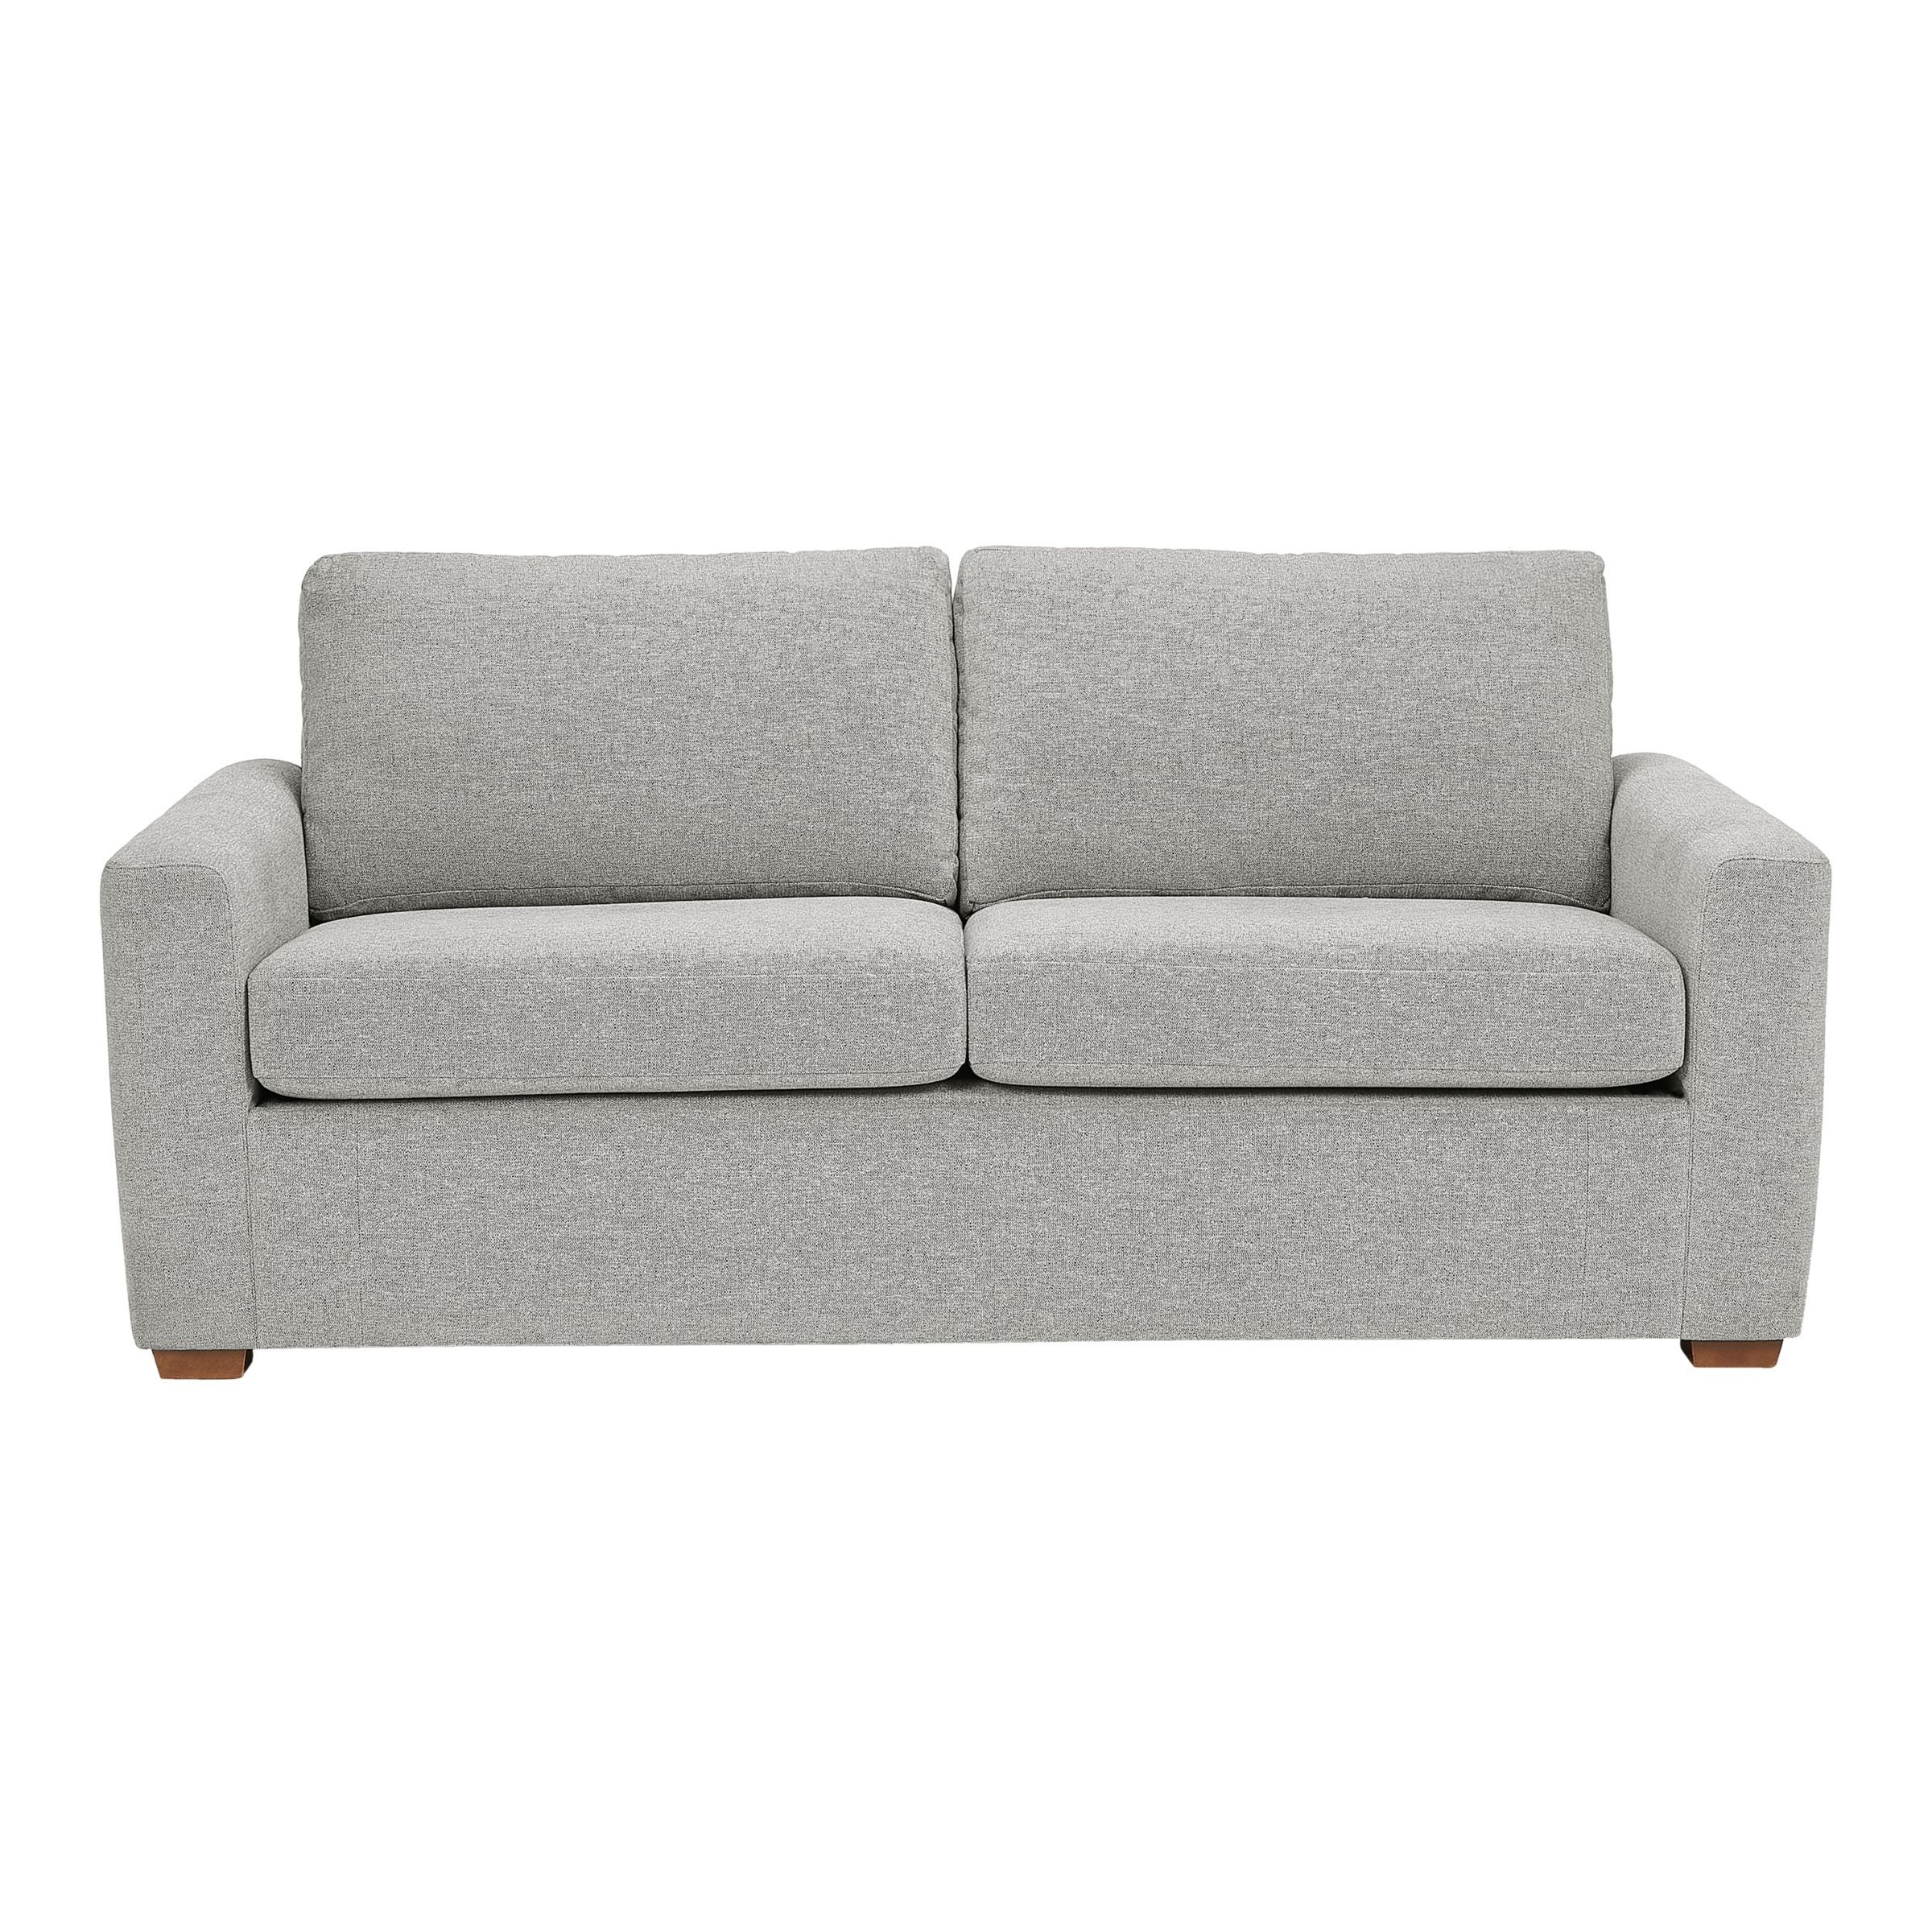 John Lewis Oliver Sofa Bed - image 1